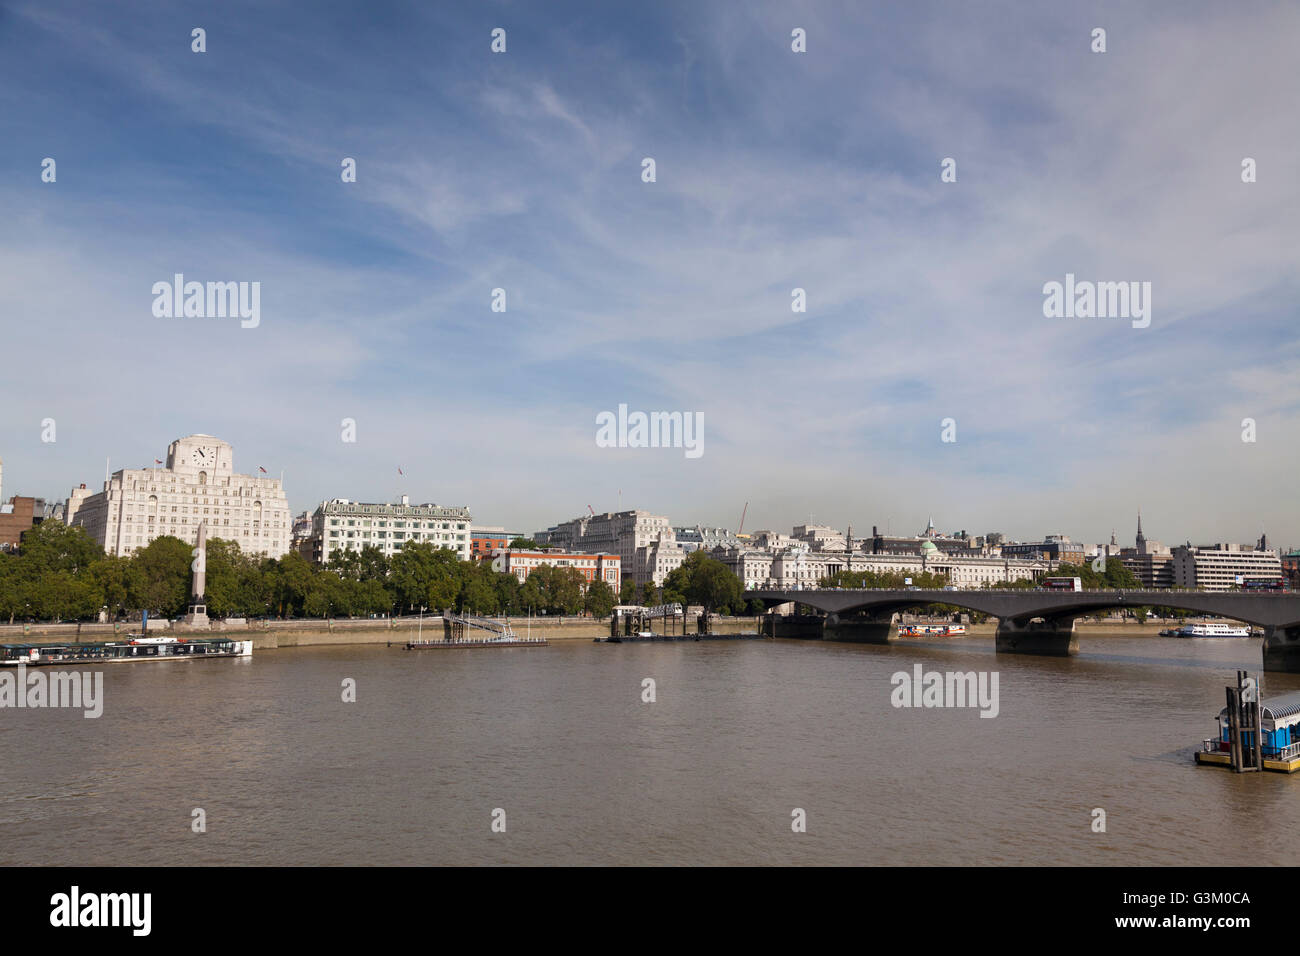 Panorama von Shell Mex House und Waterloo Bridge über die Themse, London, England, Vereinigtes Königreich, Europa Stockfoto